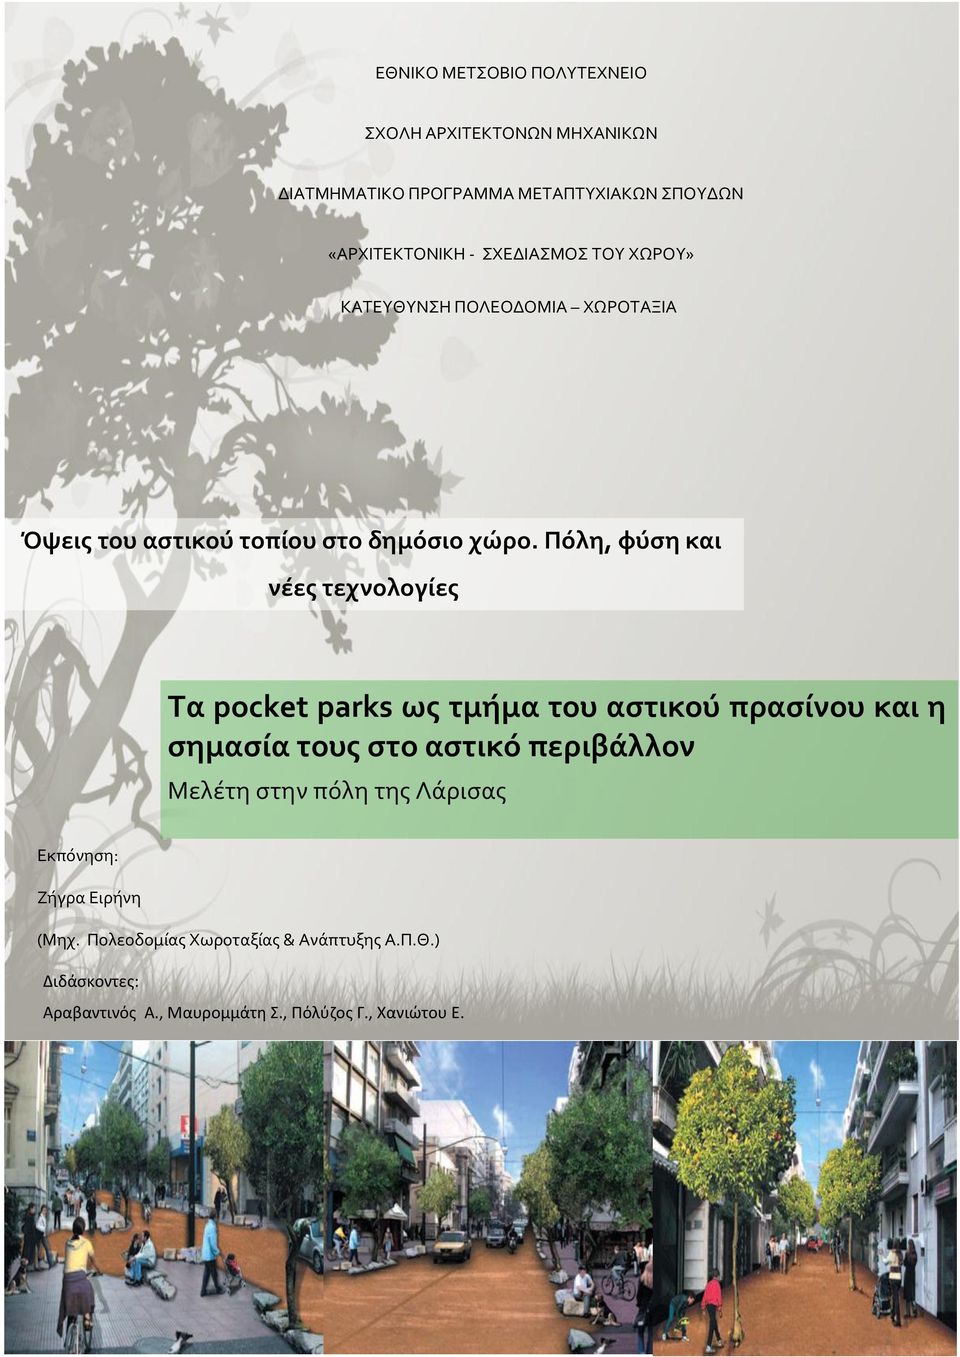 Πόλη, φύση και νέες τεχνολογίες Τα pocket parks ως τμήμα του αστικού πρασίνου και η σημασία τους στο αστικό περιβάλλον Μελέτη